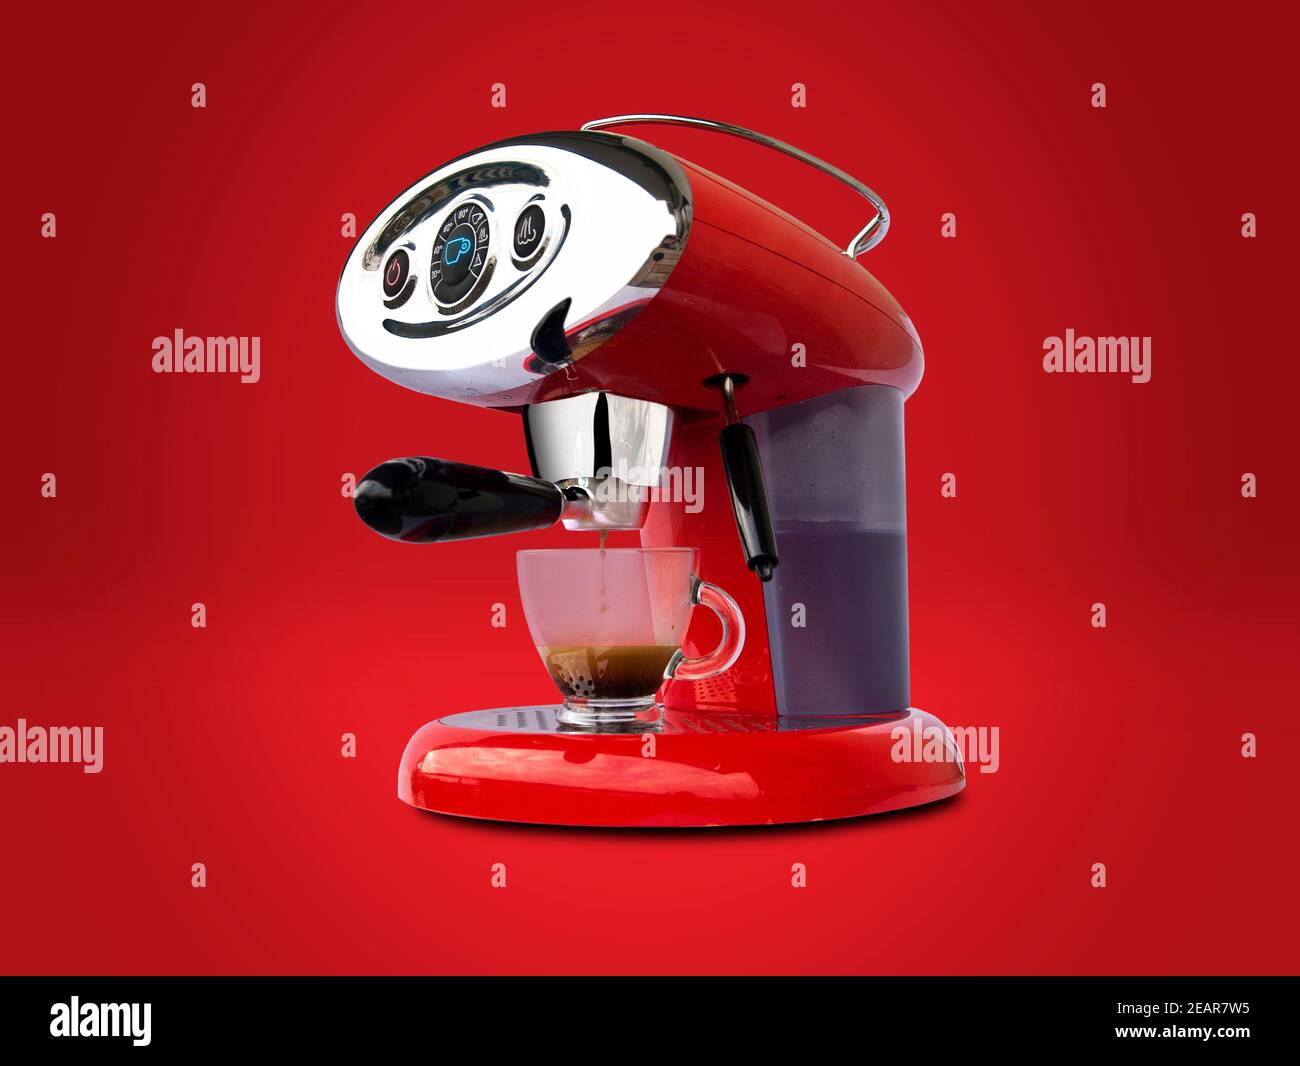 Rote Espressomaschine mit Retro-Stil isoliert auf rot Hintergrund  Stockfotografie - Alamy